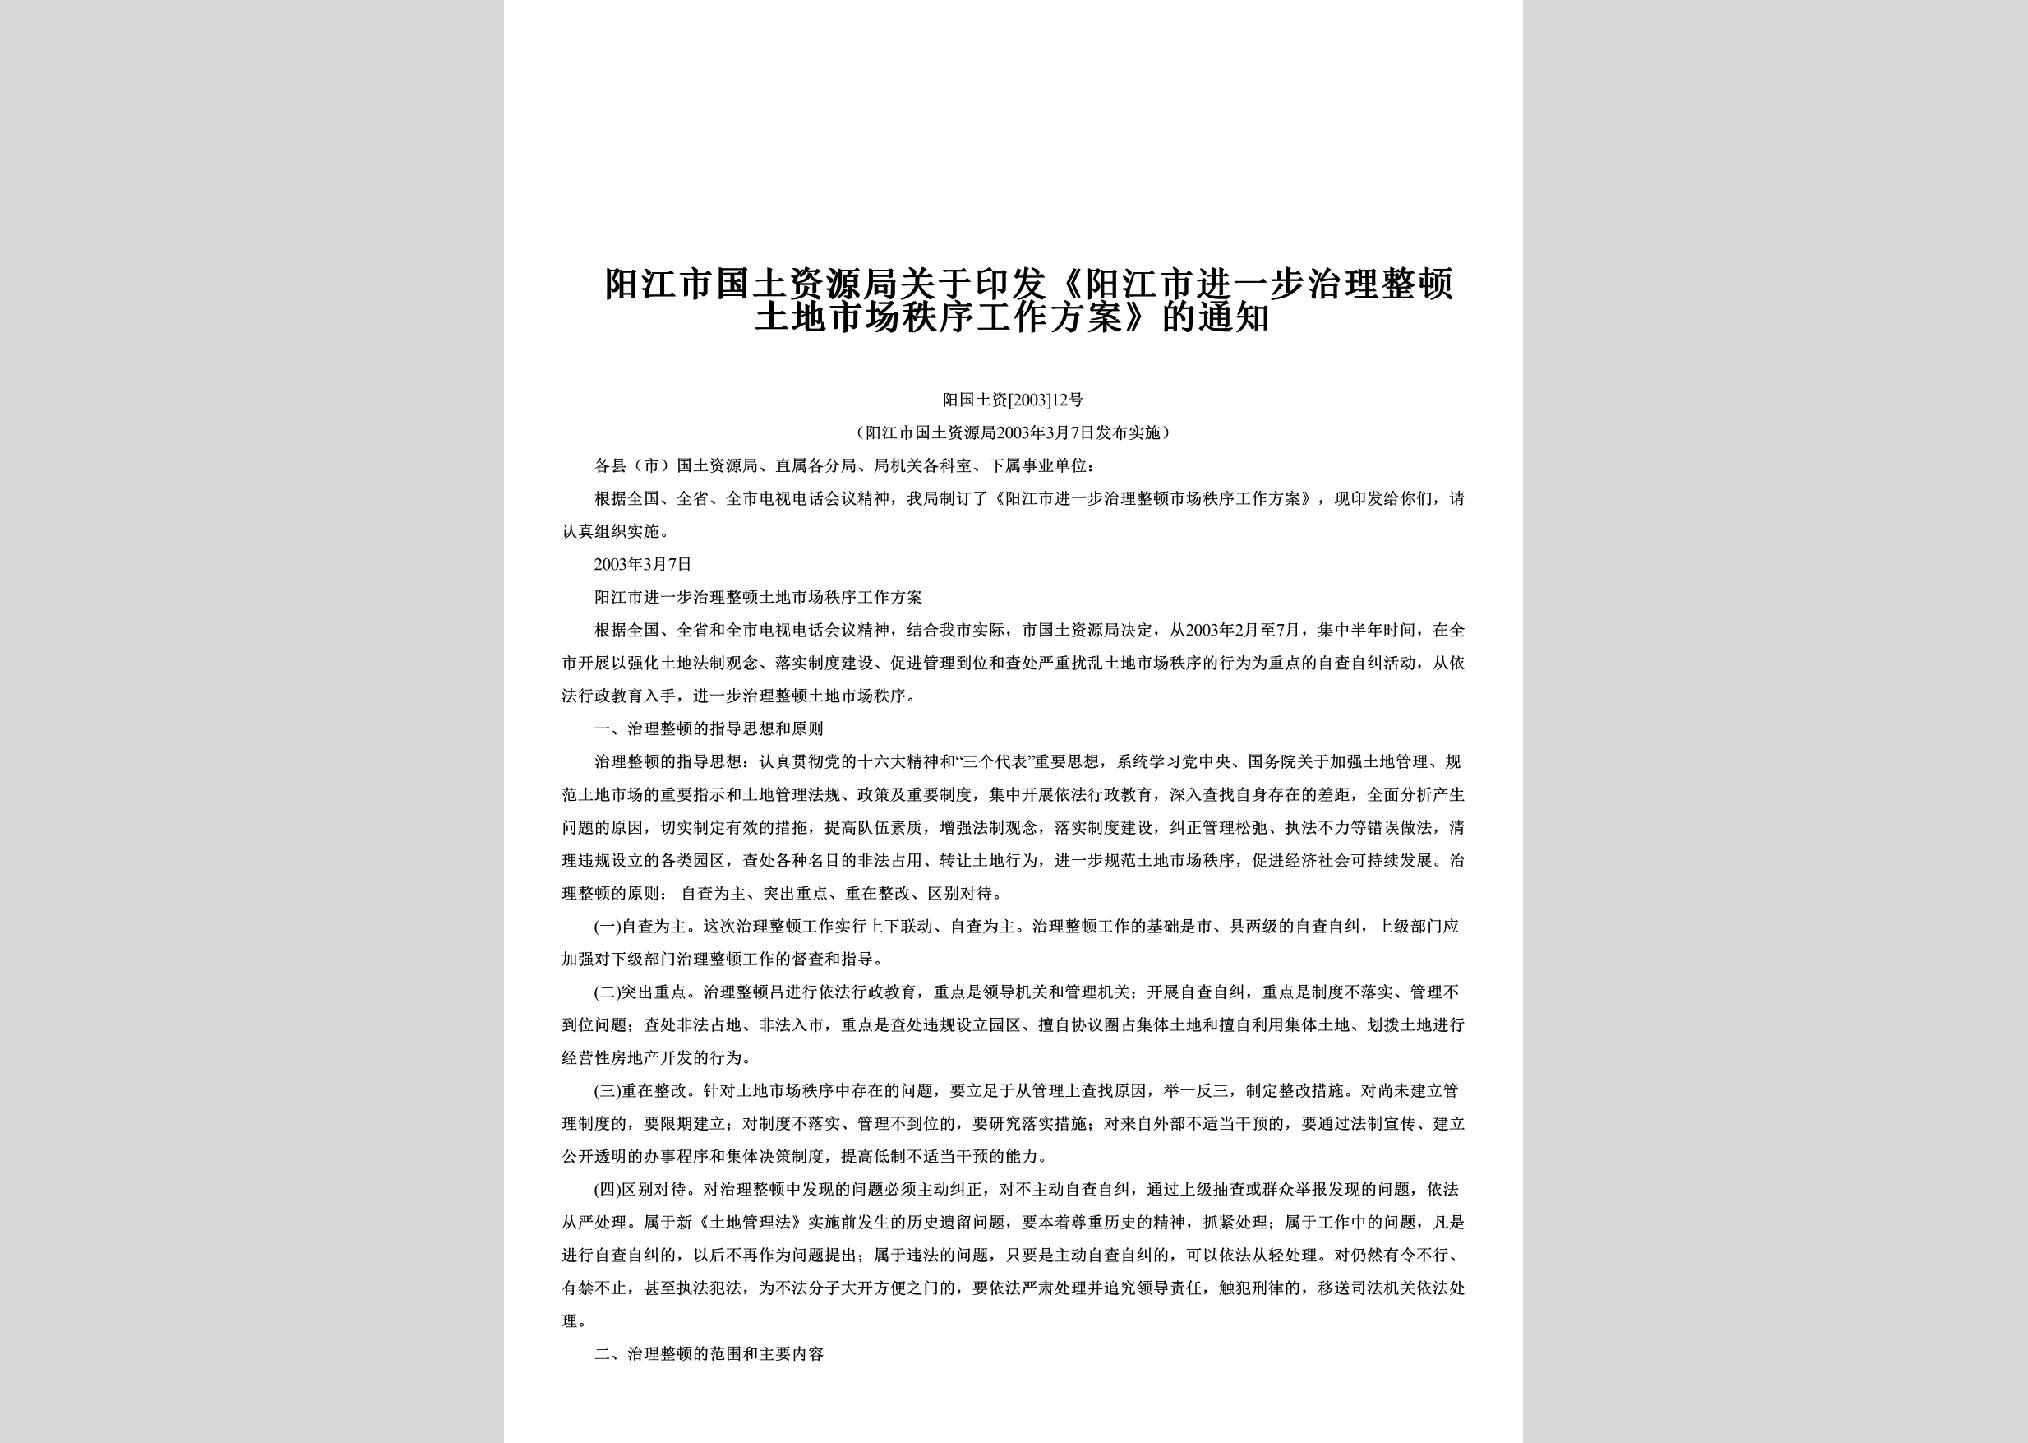 阳国土资[2003]12号：关于印发《阳江市进一步治理整顿土地市场秩序工作方案》的通知